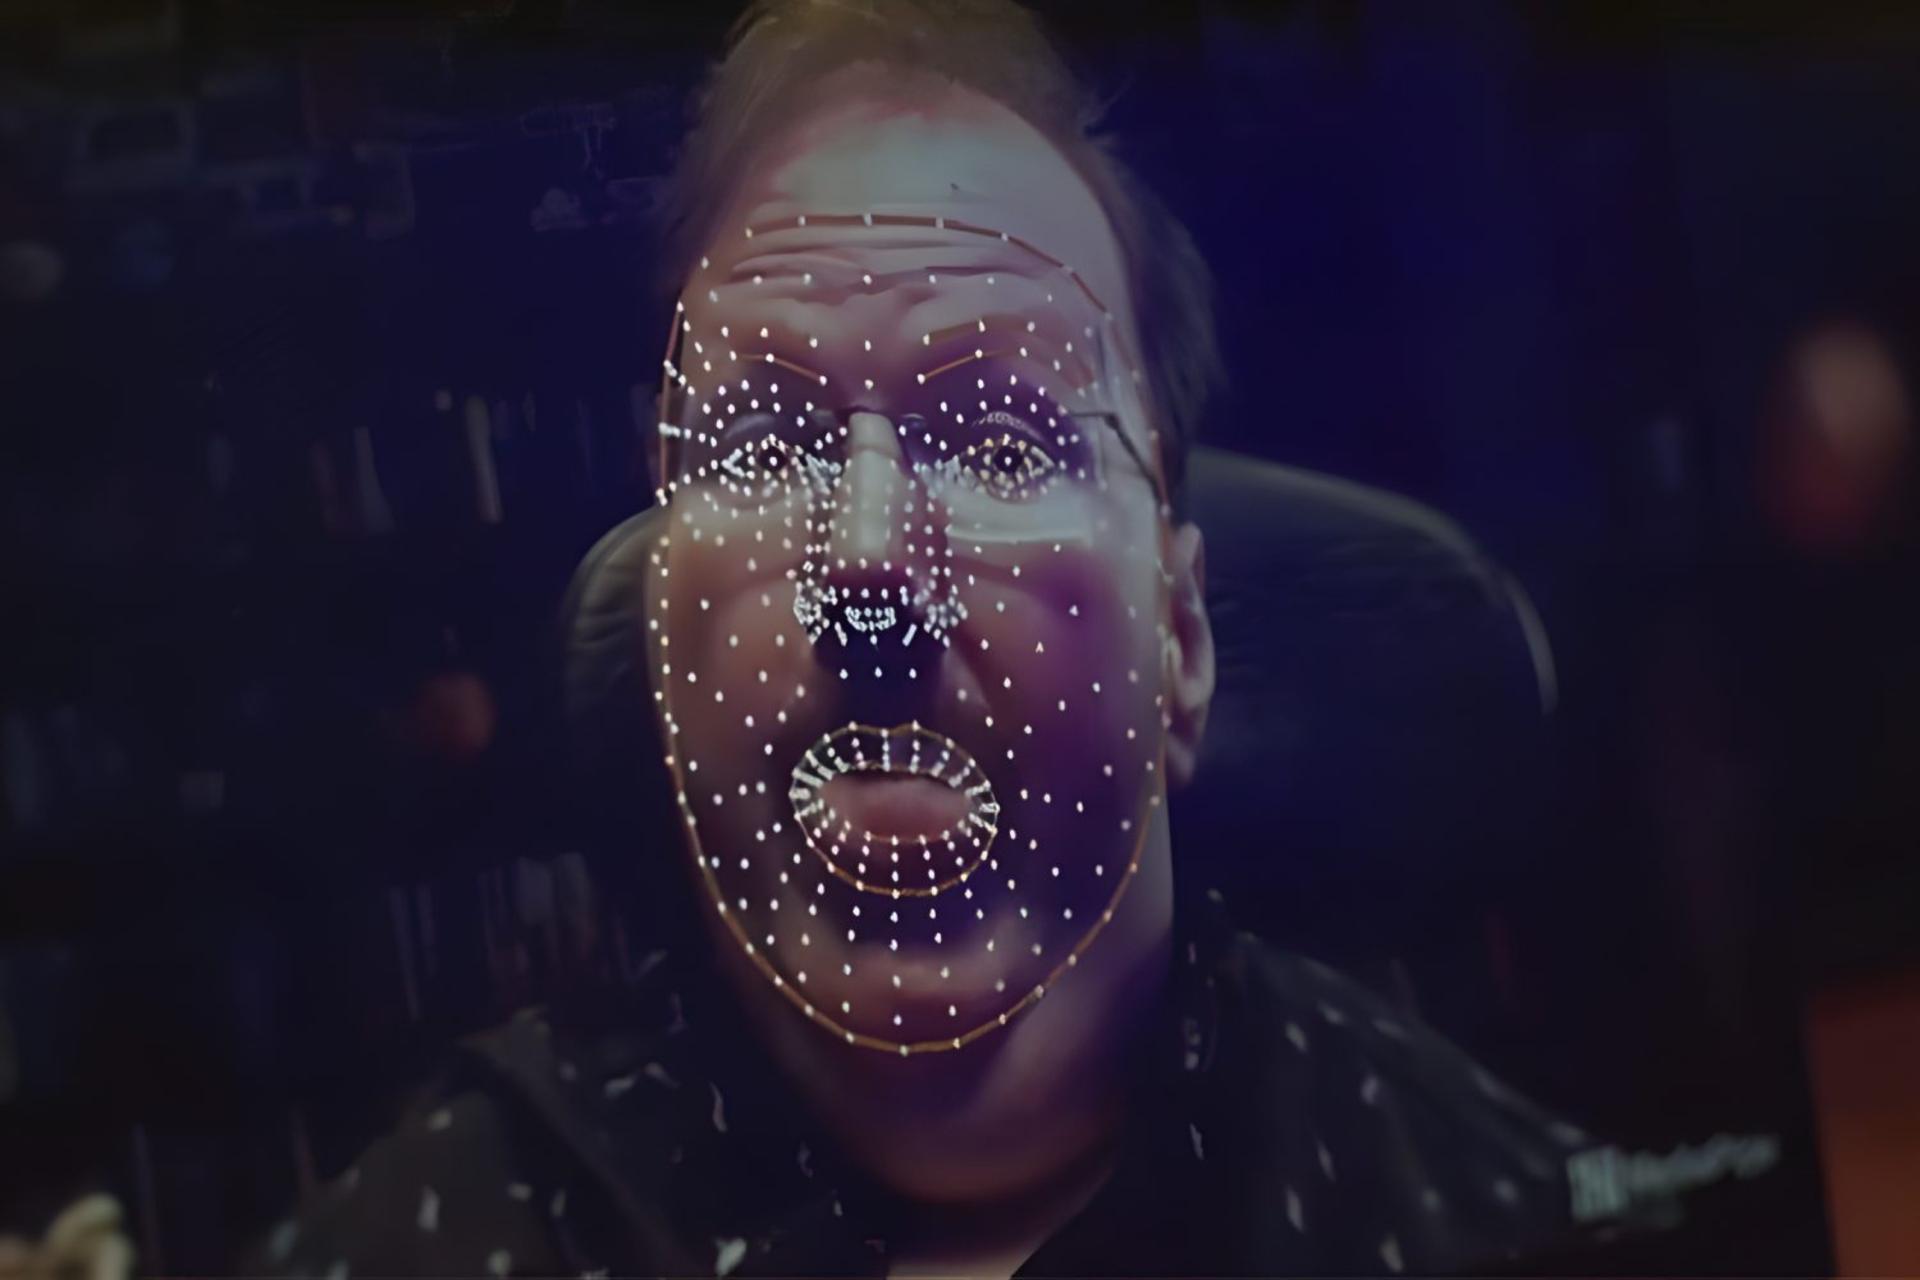 چهره مرد با نقاط دیجیتالی سفید روی آن که نشان دهنده سیستم ردیابی حالات چهره است